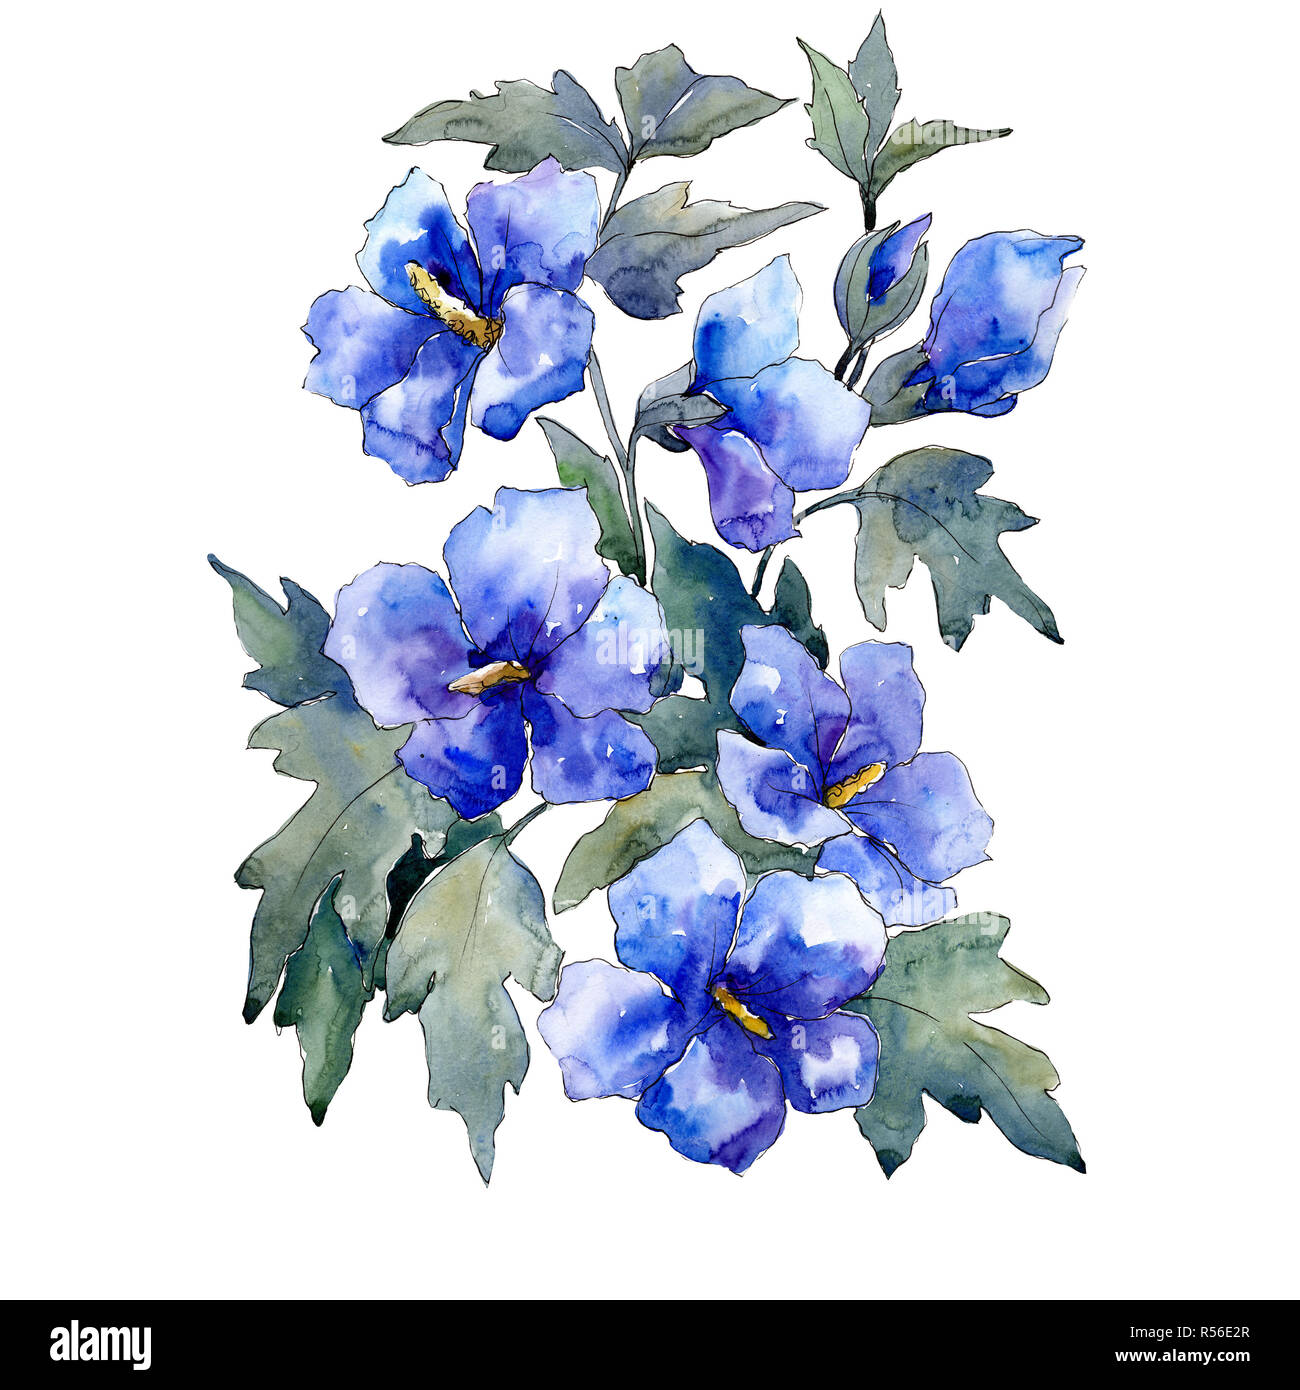 Bouquet de fleurs bleues sur fond blanc. Illustration à l'aquarelle.  Bouquet isolé de l'élément d'illustration Photo Stock - Alamy